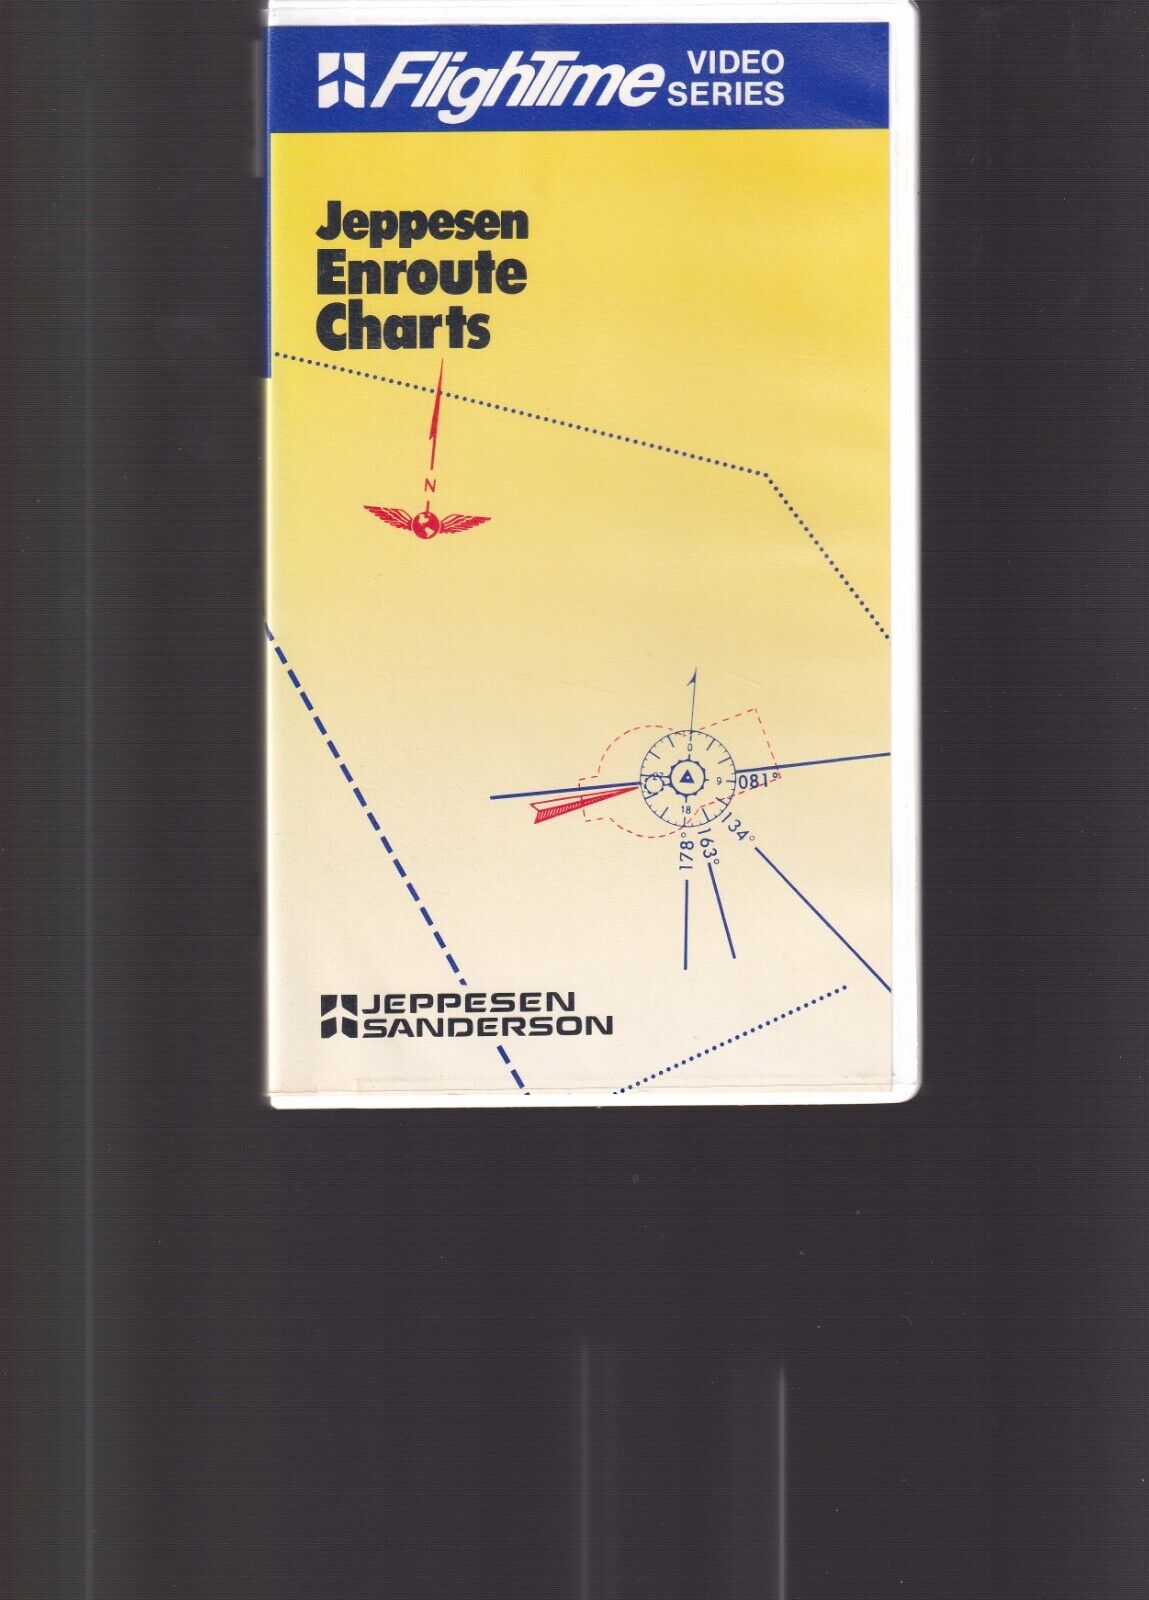 Jeppesen Enroute Charts, VHS